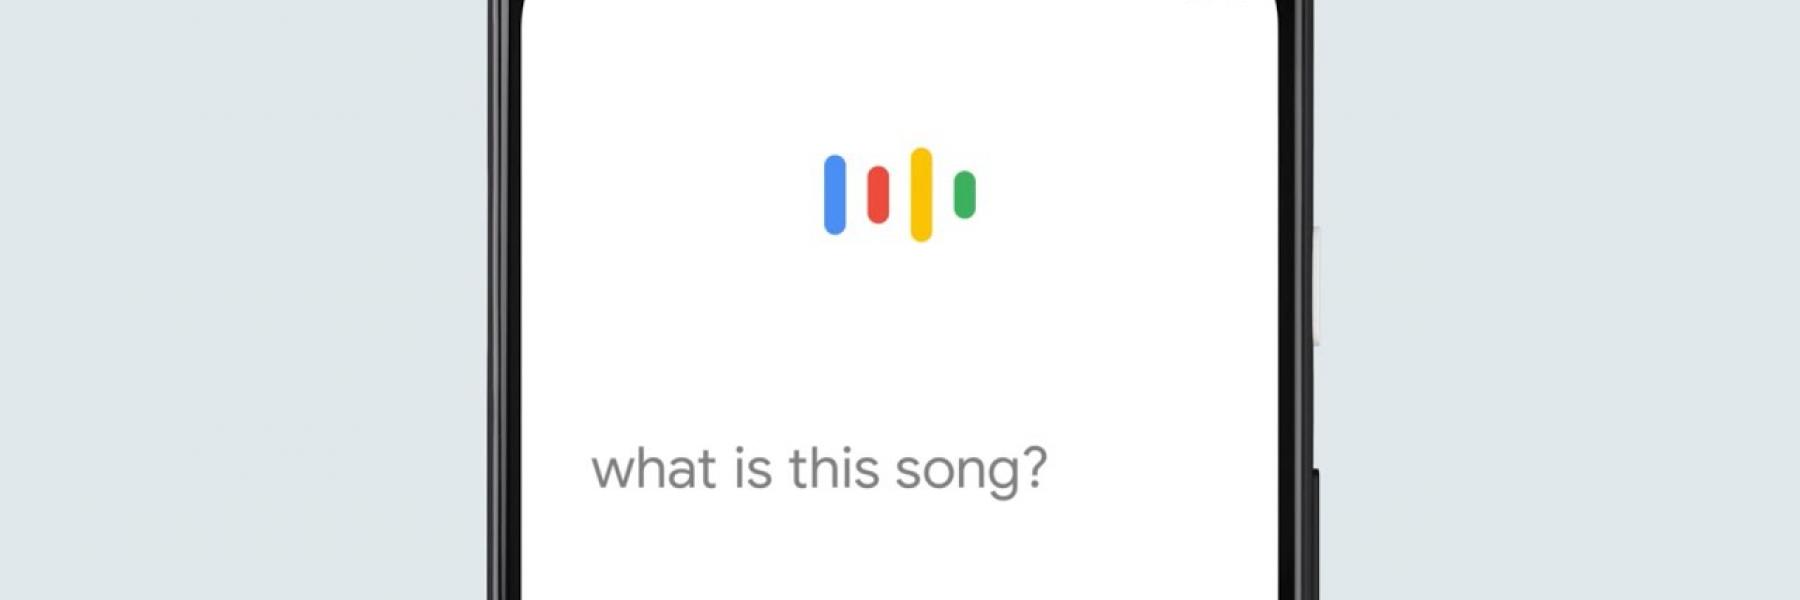 جوجل تضيف خاصية جديدة تتيح للمستخدم البحث عن أغنية عن طريق دندنة اللحن!